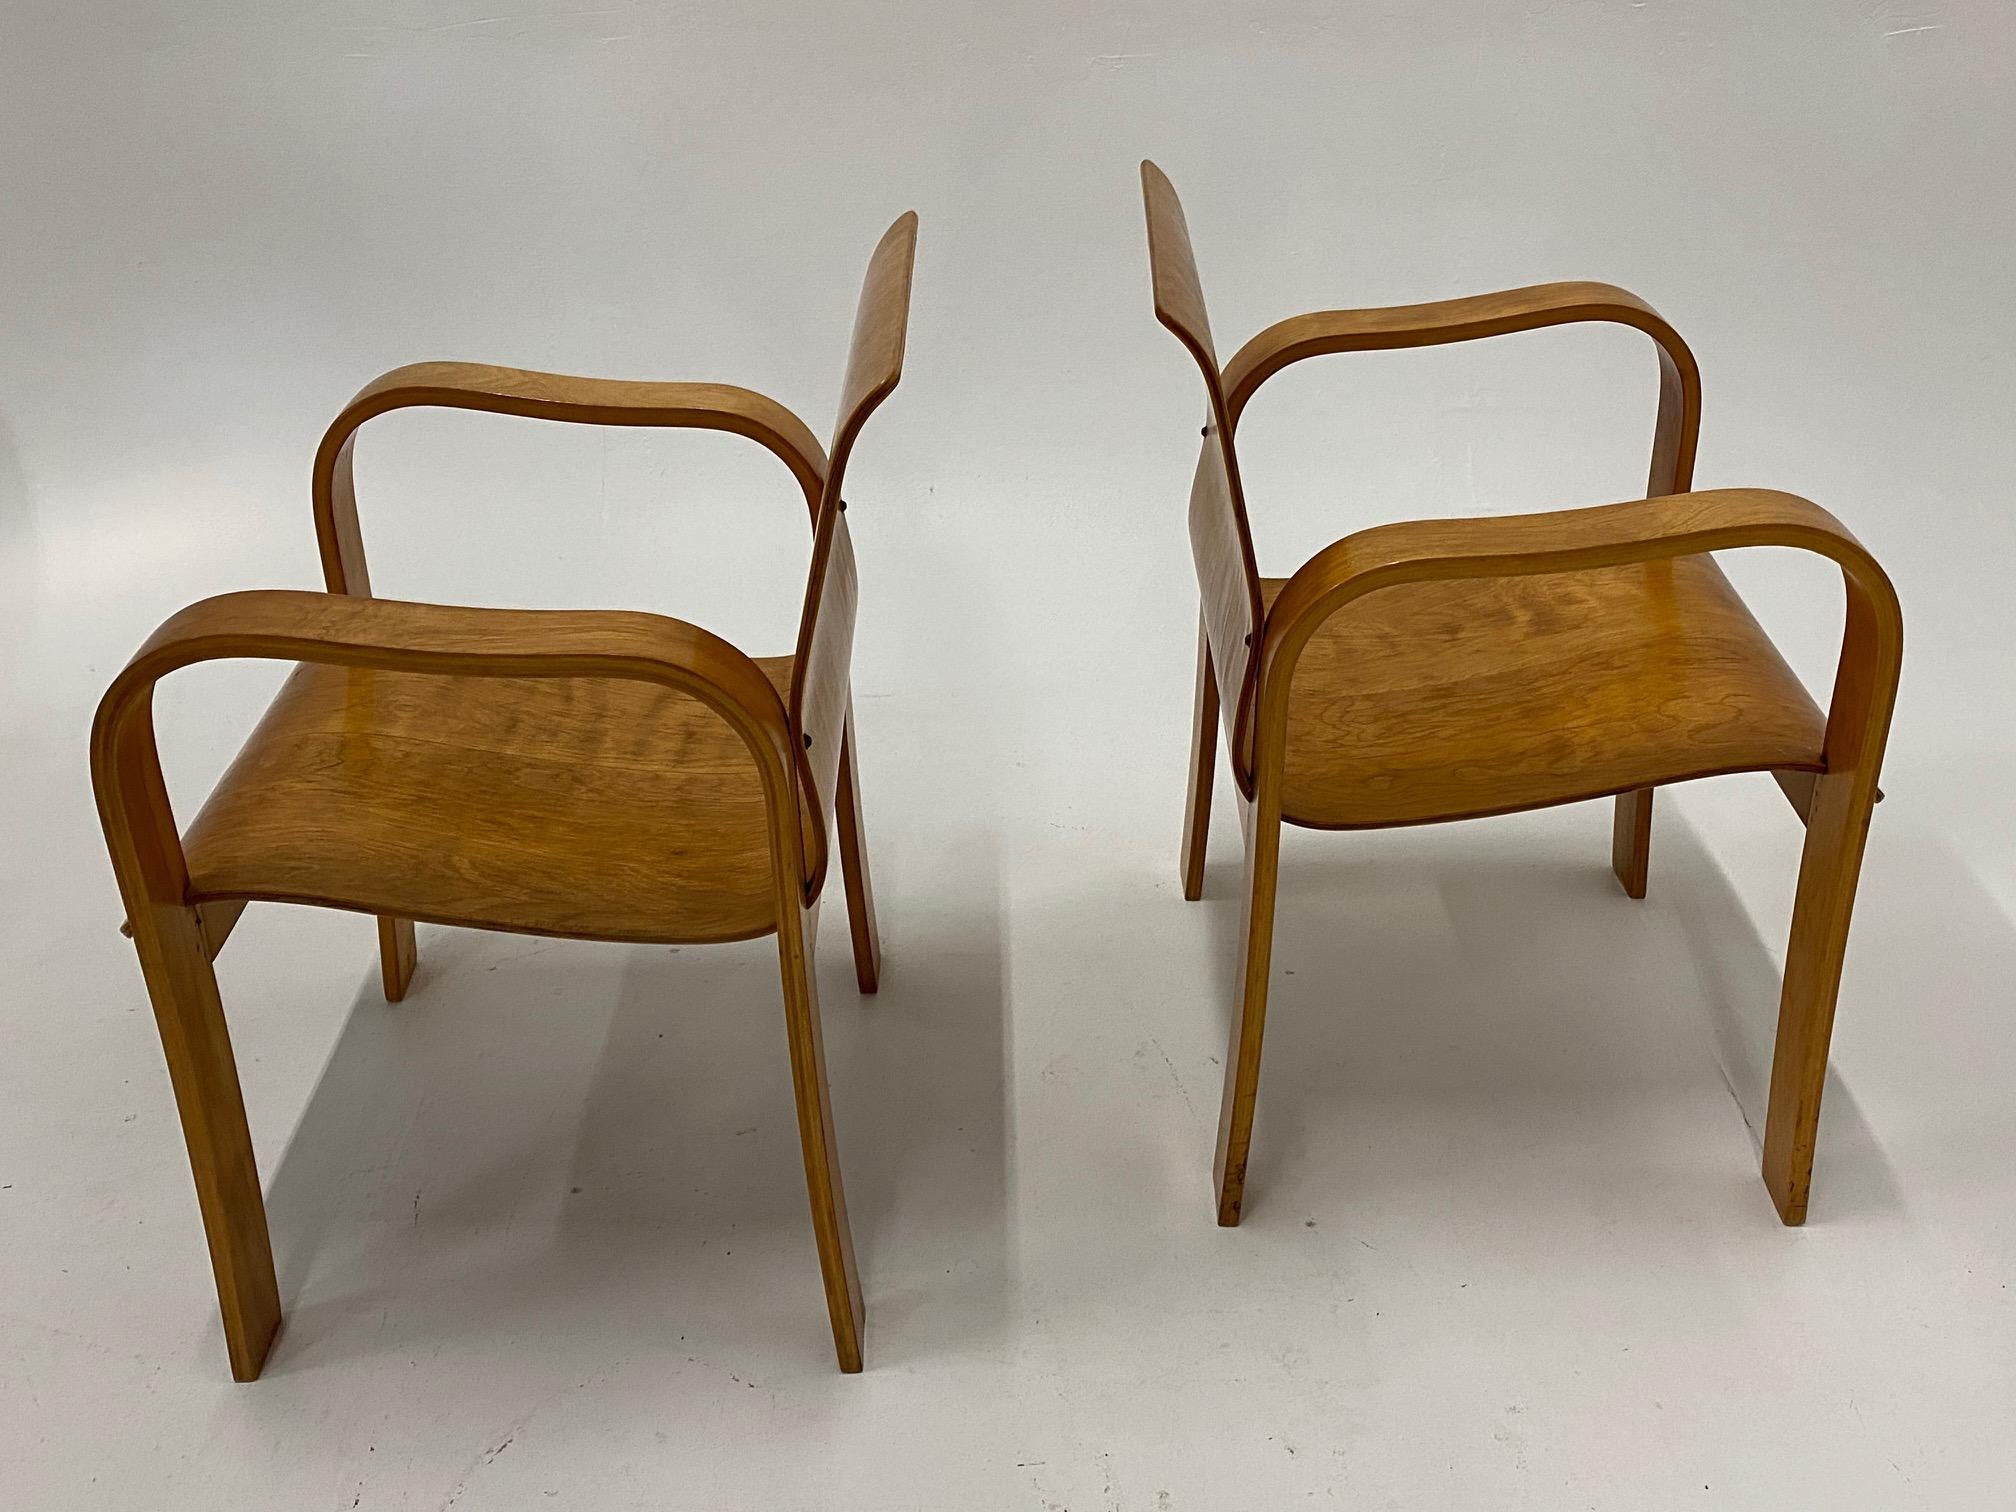 Ein elegantes Paar Sessel aus geformtem Birkensperrholz in der Art von Alvar Aalto mit raffinierter skulpturaler Form und hervorragendem Komfort.
Armhöhe 25